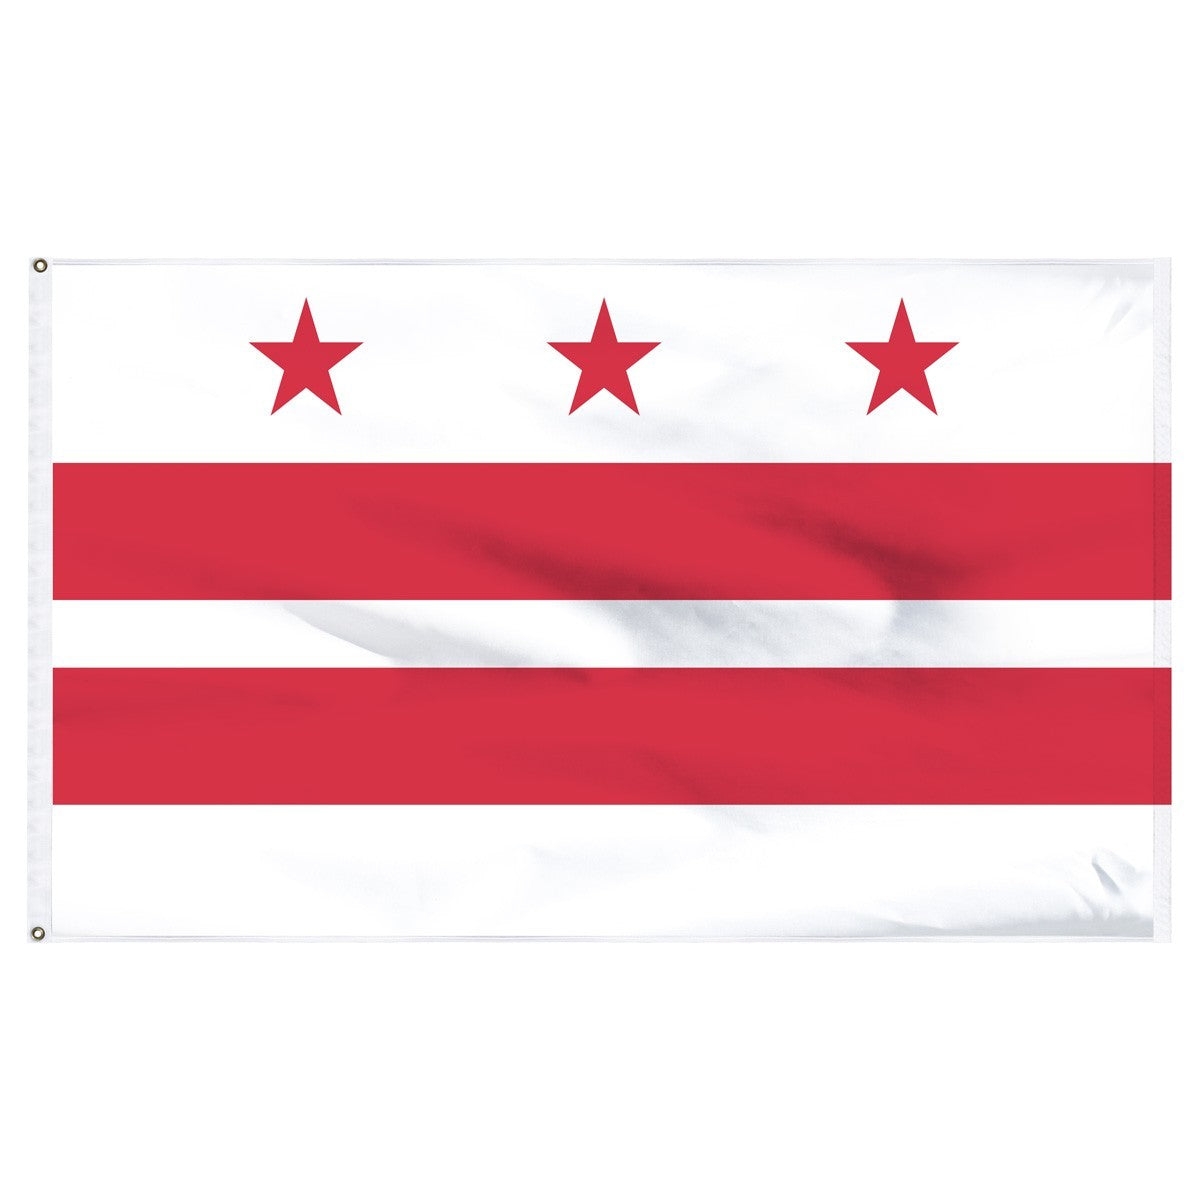 Bandera de poliéster interior del Distrito de Columbia (Washington DC) de 2 pies x 3 pies